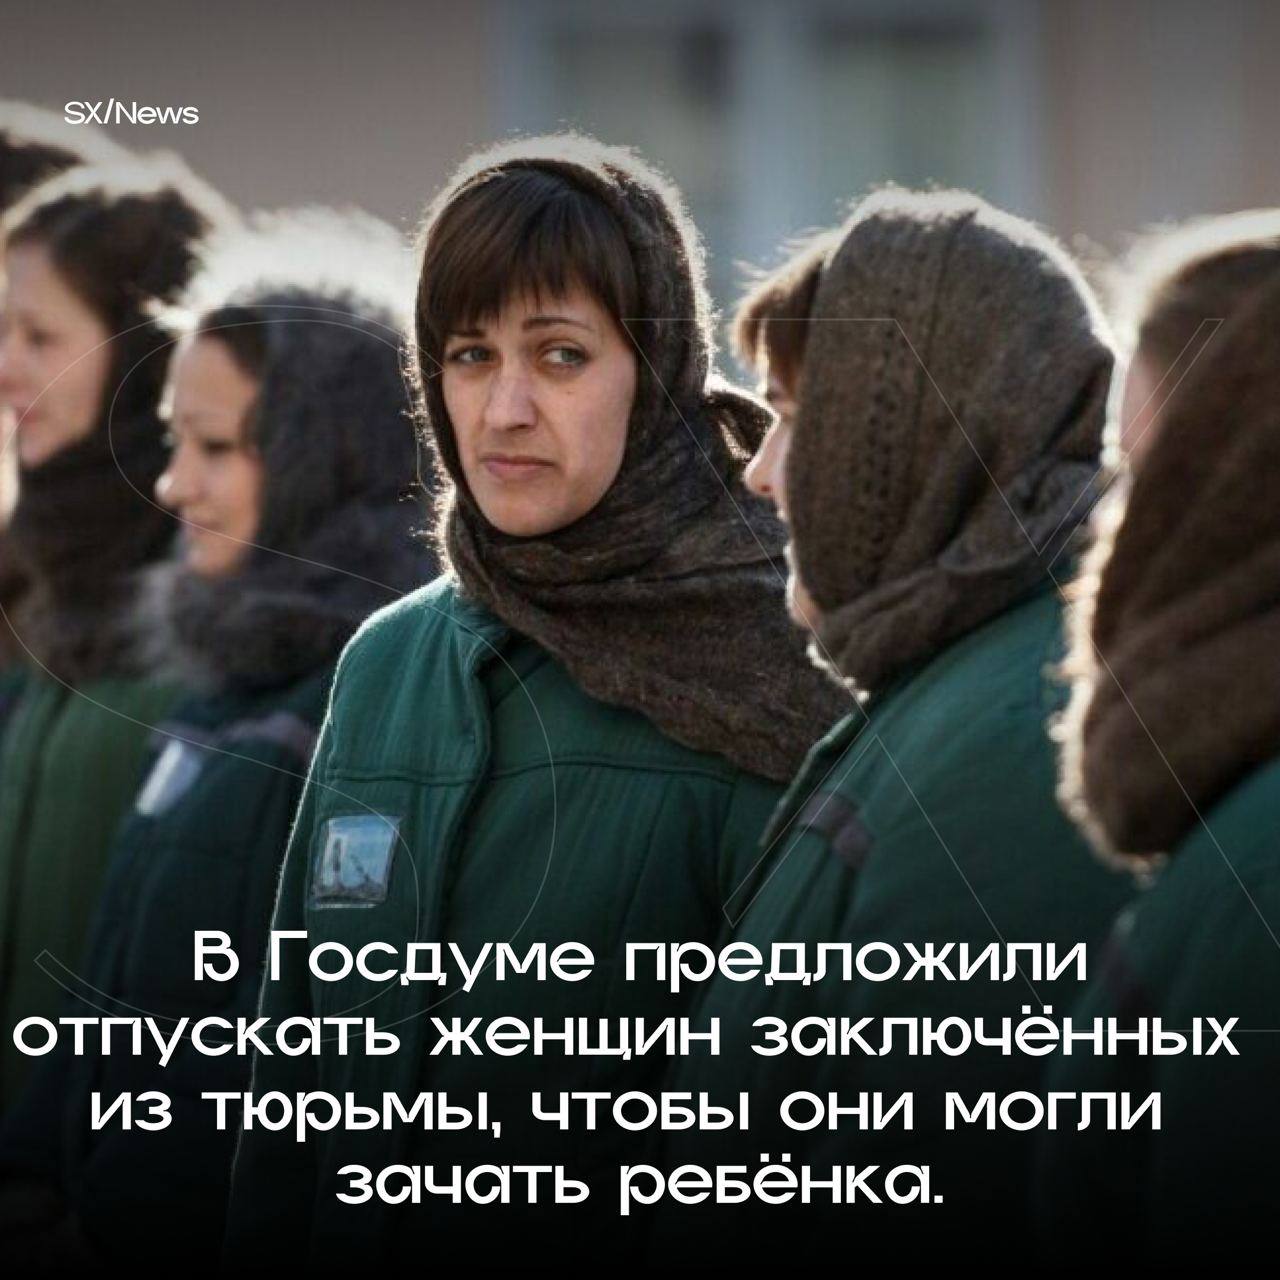 Отбывание наказания женщин. Женская колония строгого режима в России. Женщины заключенные. Женщины осужденные. Тюрьма женская колония.